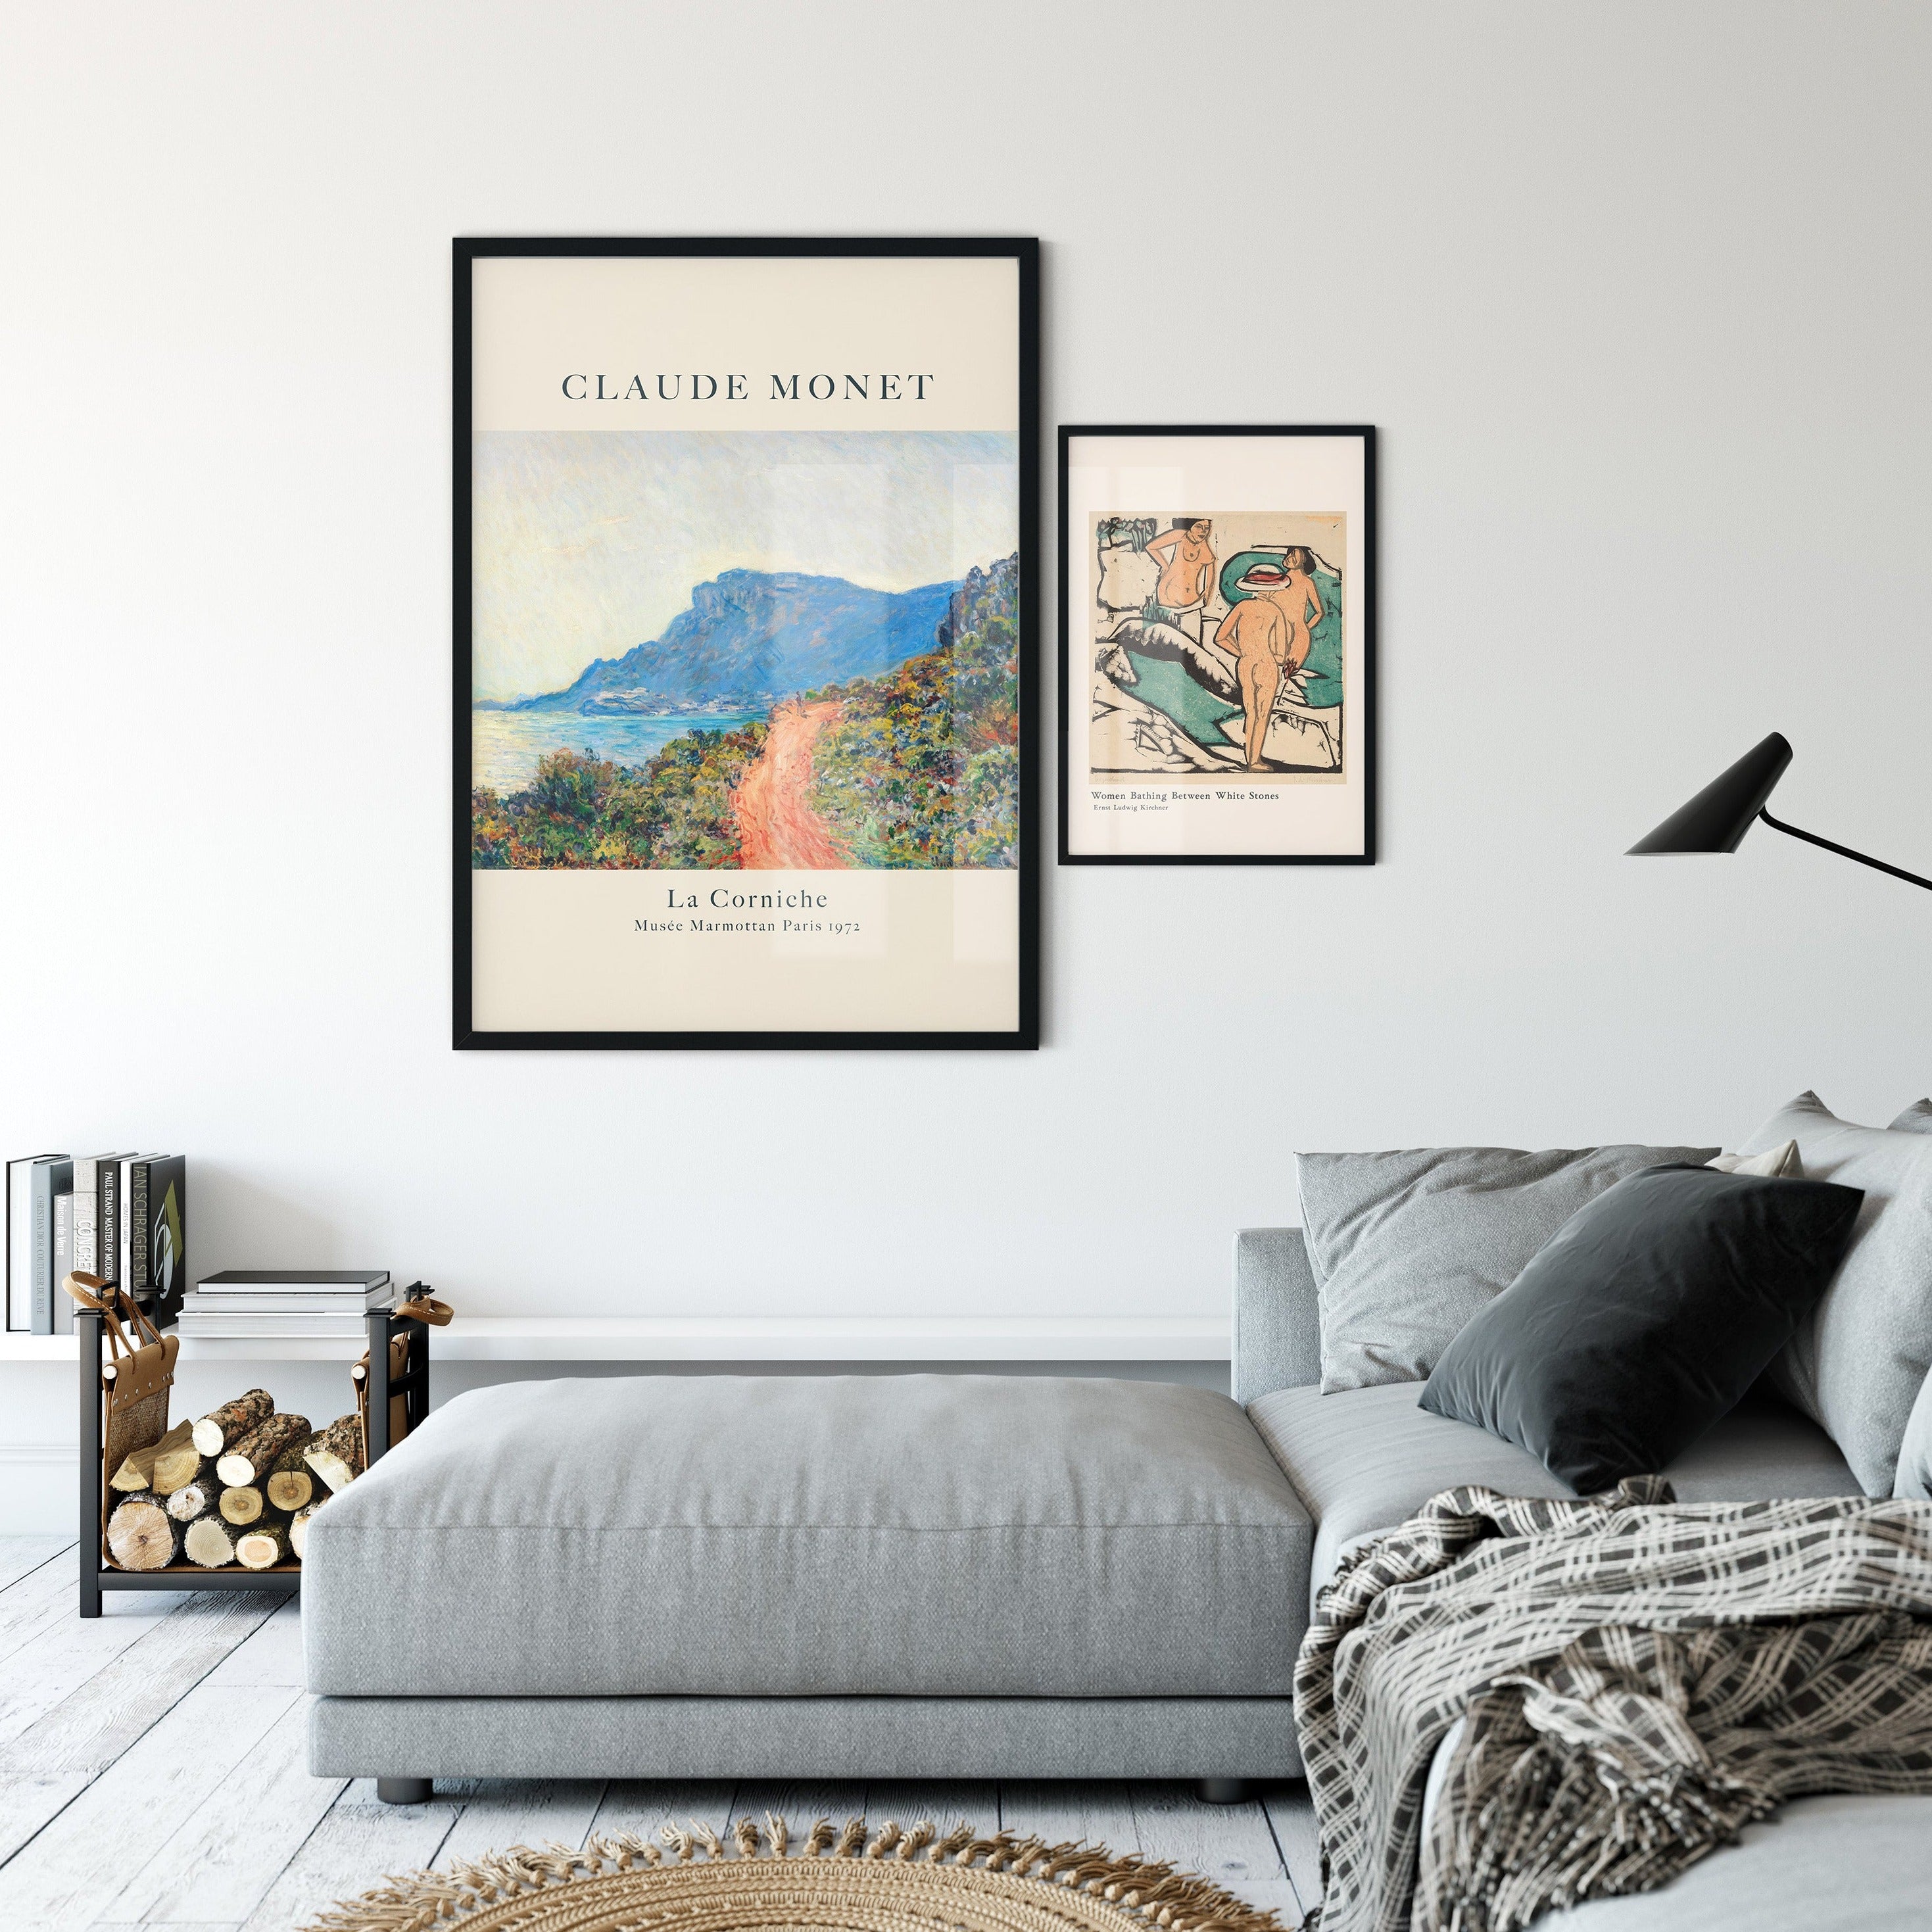 Claude Monet Poster - La Corniche near Monaco